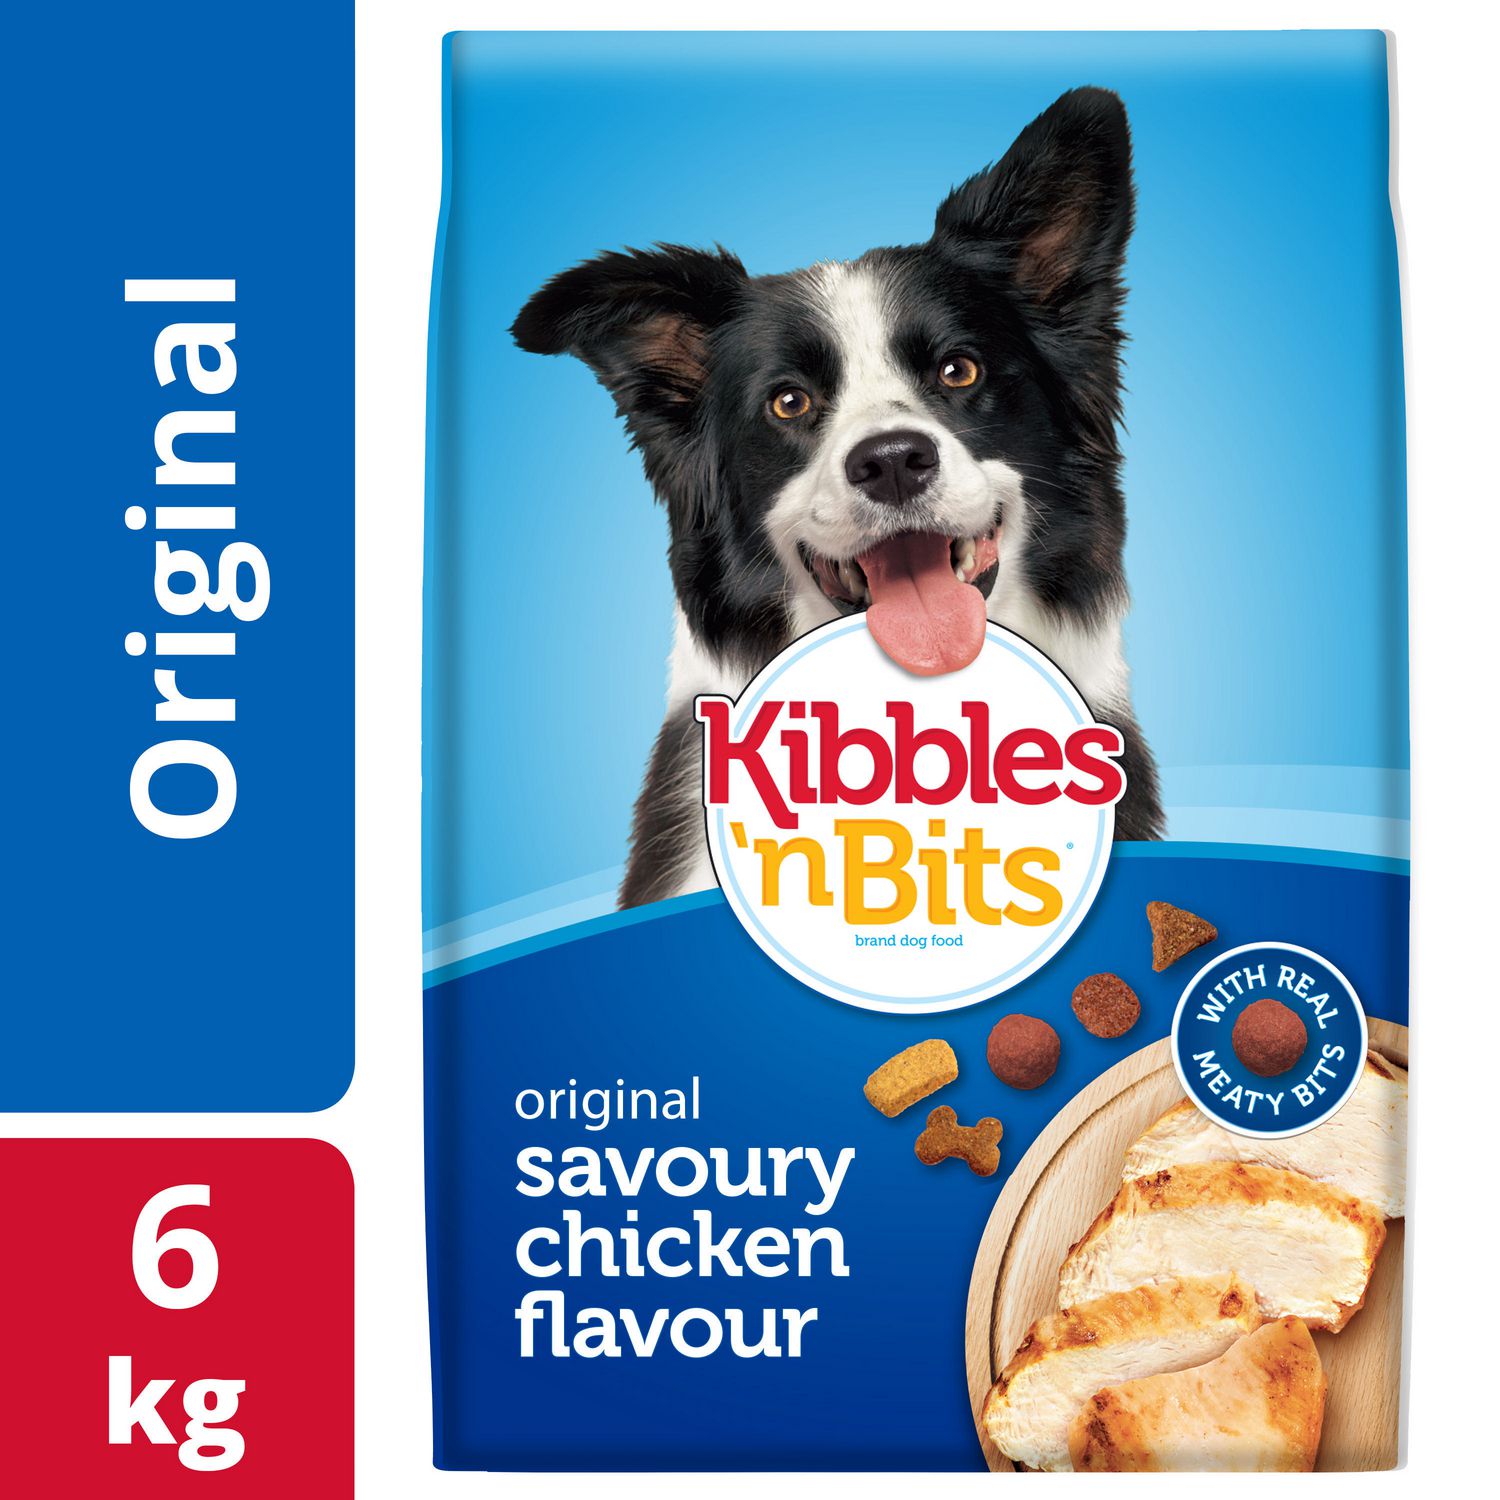 kibbles and bits dog food recall